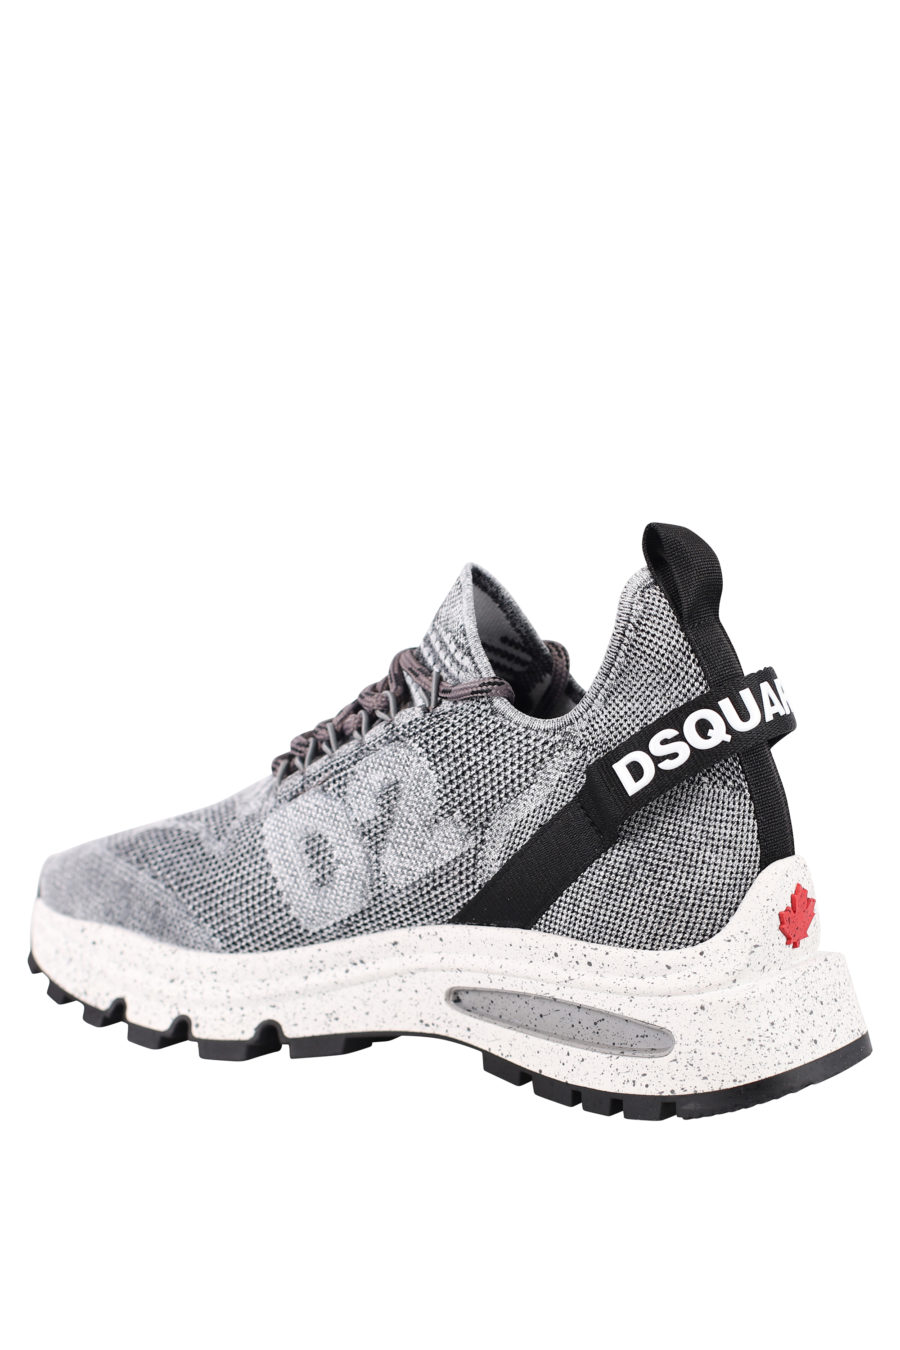 Zapatillas grises con logo pequeño blanco y "D2" - IMG 0713